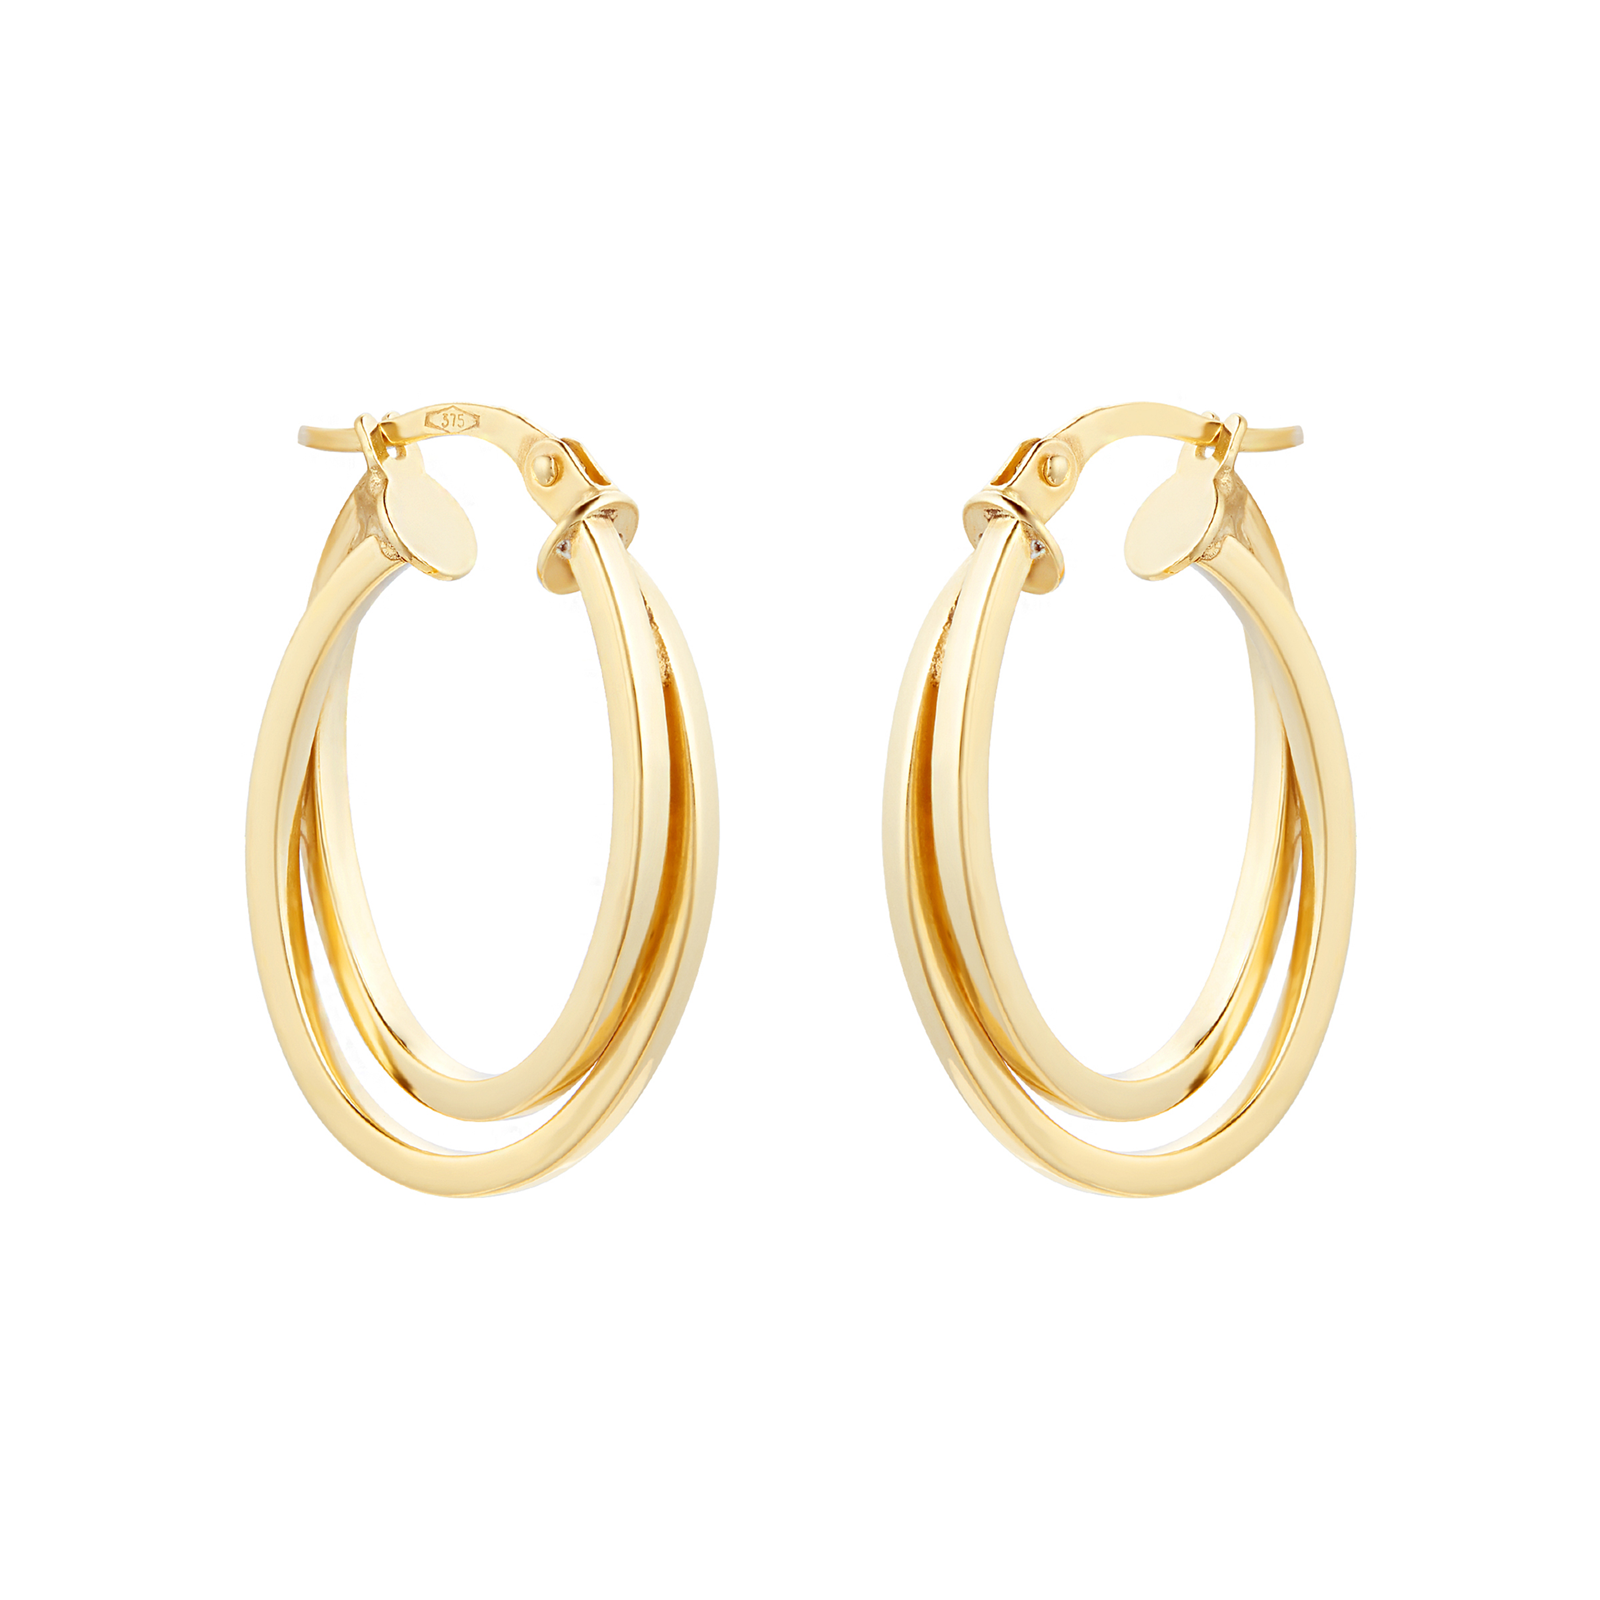 9ct Yellow Gold Intertwined Hoop Earrings | Earrings | Jewellery ...